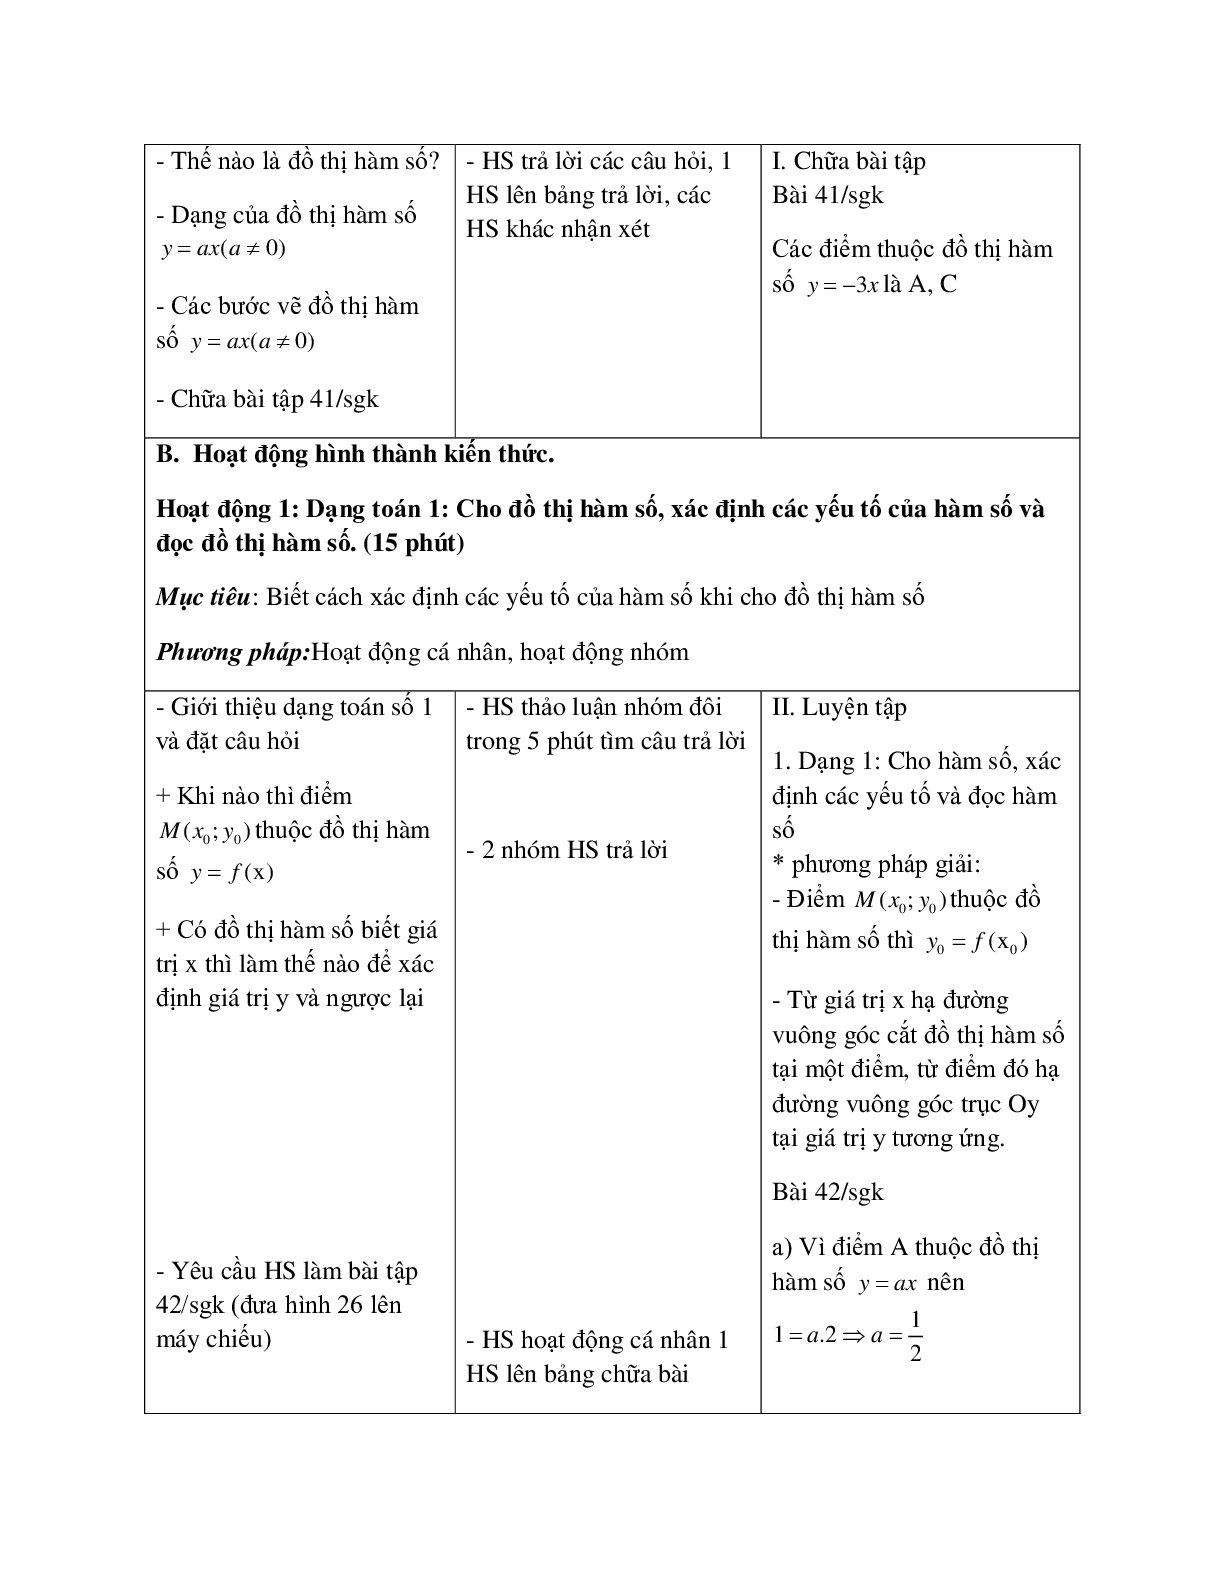 Giáo án Toán học 7 bài 7: Đồ thị hàm số y=ax hay nhất (trang 7)